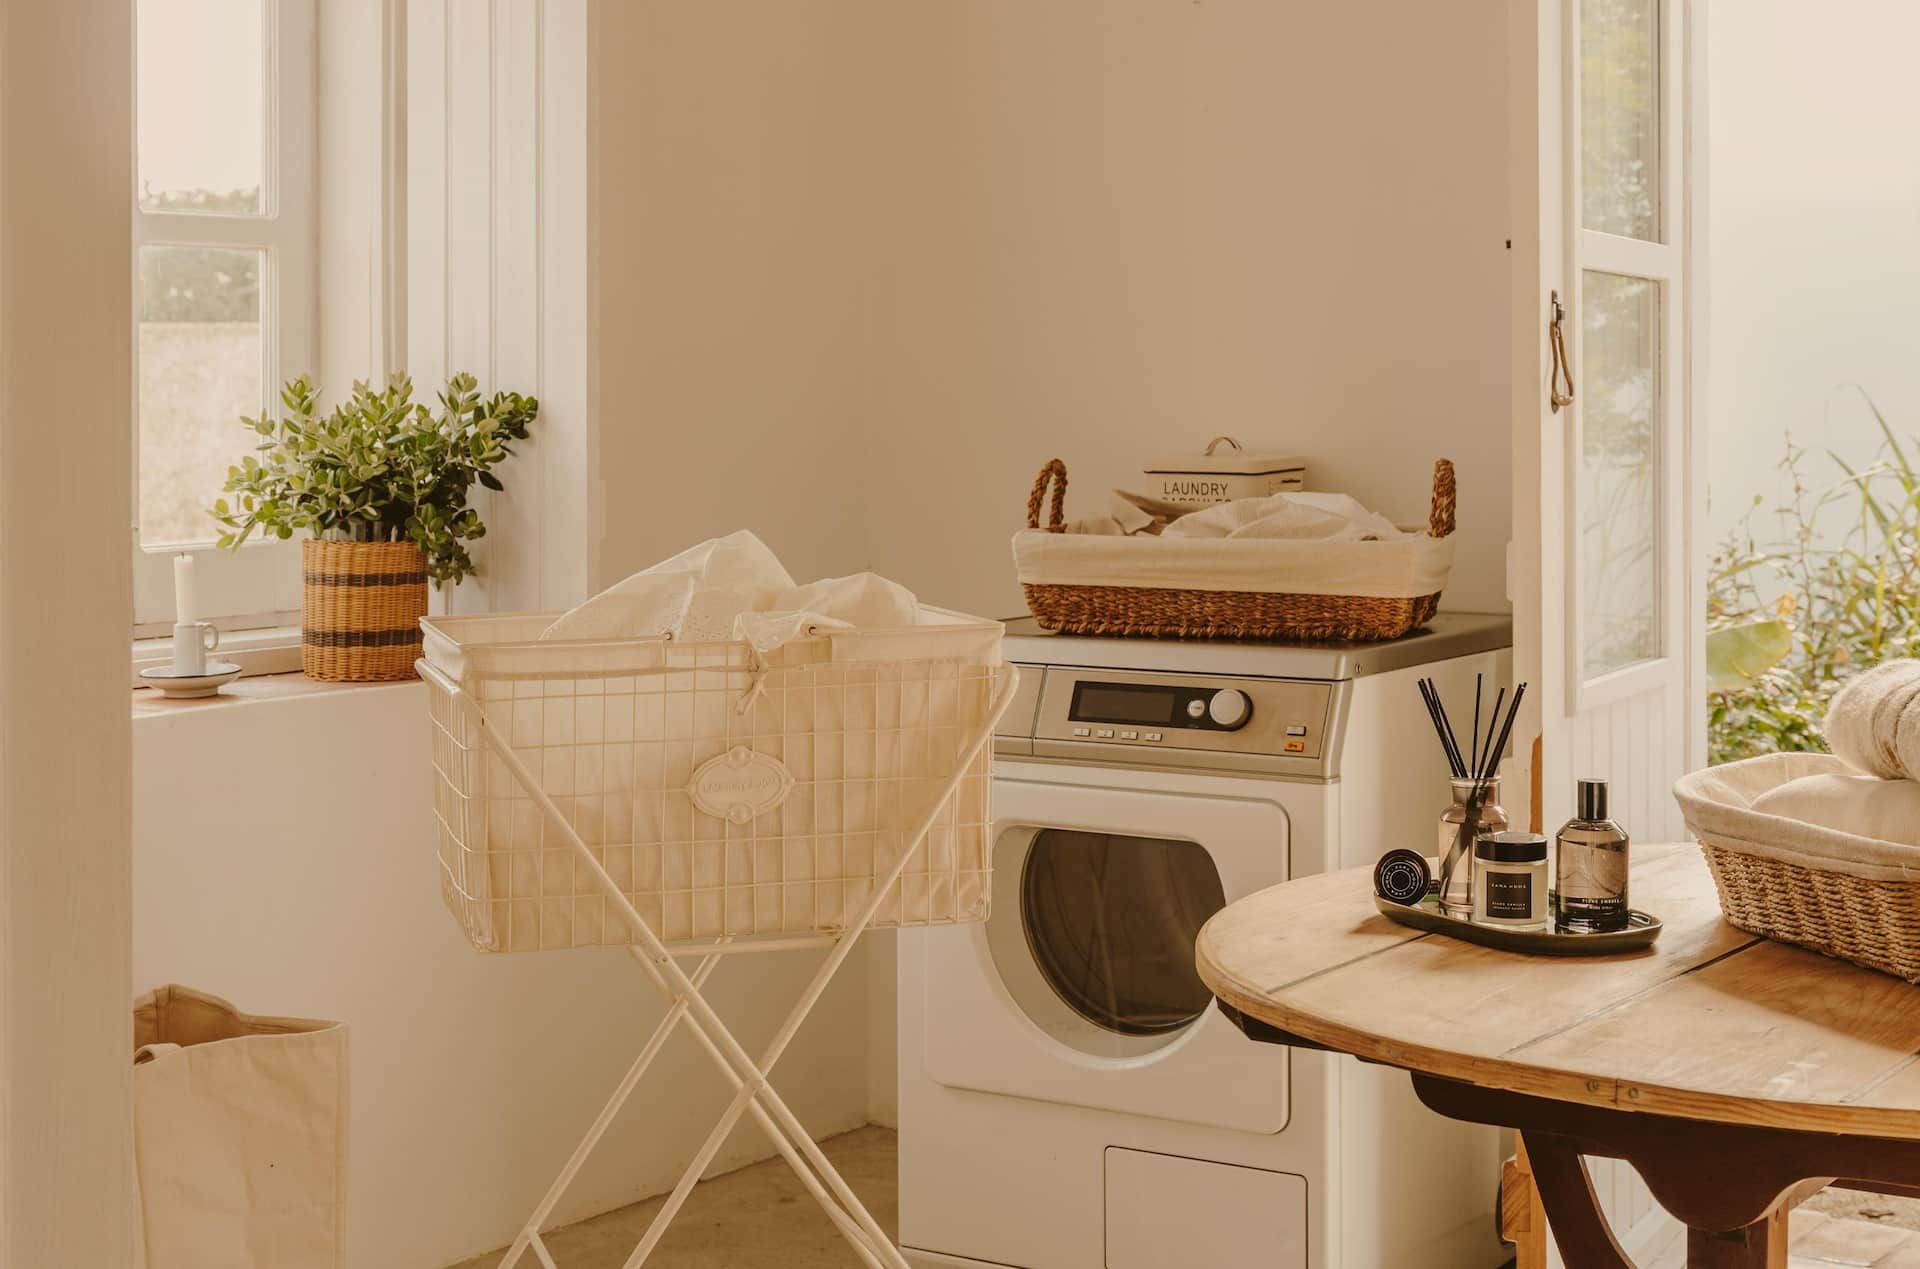 Laundry de Zara Home - Novedades